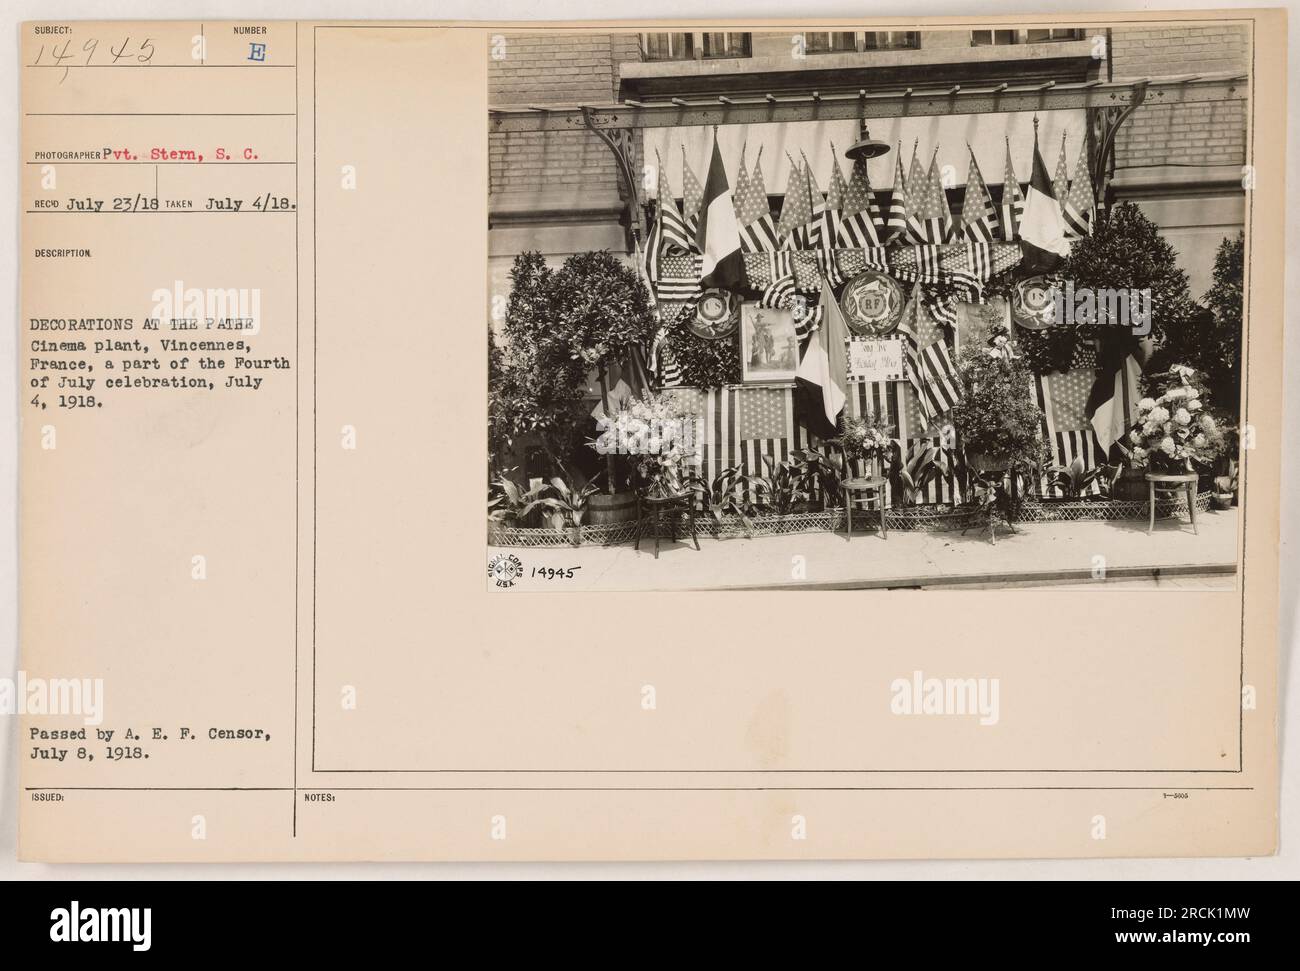 Amerikanische Soldaten feiern den 4. Juli in der Pathe-Kinofabrik in Vincennes, Frankreich, am 4. Juli 1918. Die Dekorationen auf dem Bild zeigen den patriotischen Geist des Feiertags. Dieses Foto wurde am 4. Juli 1918 von Pvt. Stern aufgenommen und am 8. Juli 1918 vom A. E. F. Censor genehmigt. Stockfoto